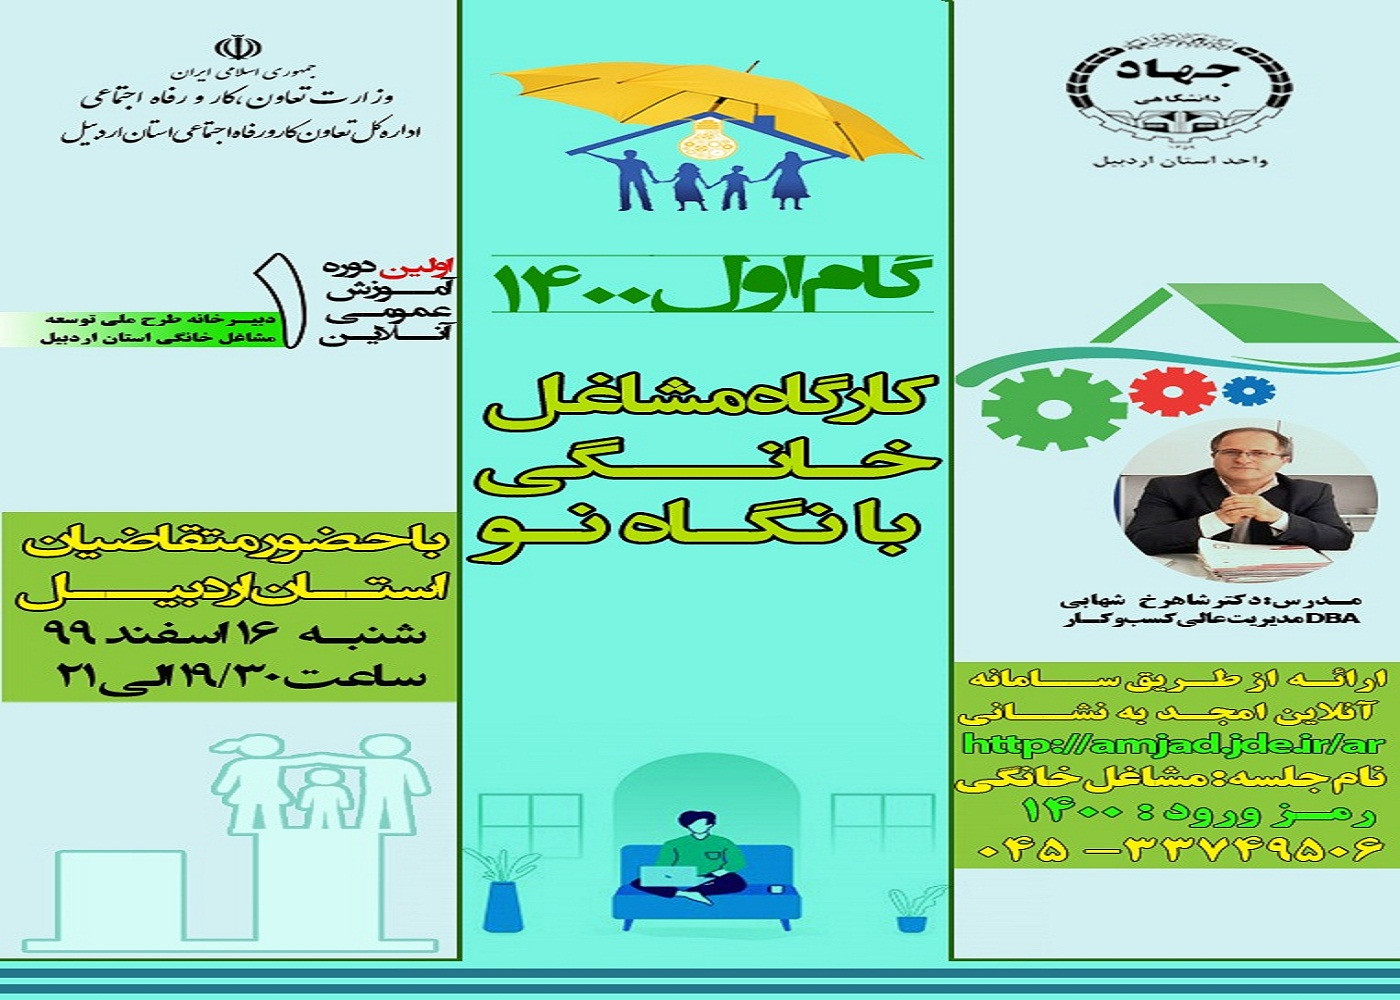 کارگاه مجازی《مشاغل خانگی با نگاه نو》در اردبیل برگزار می شود